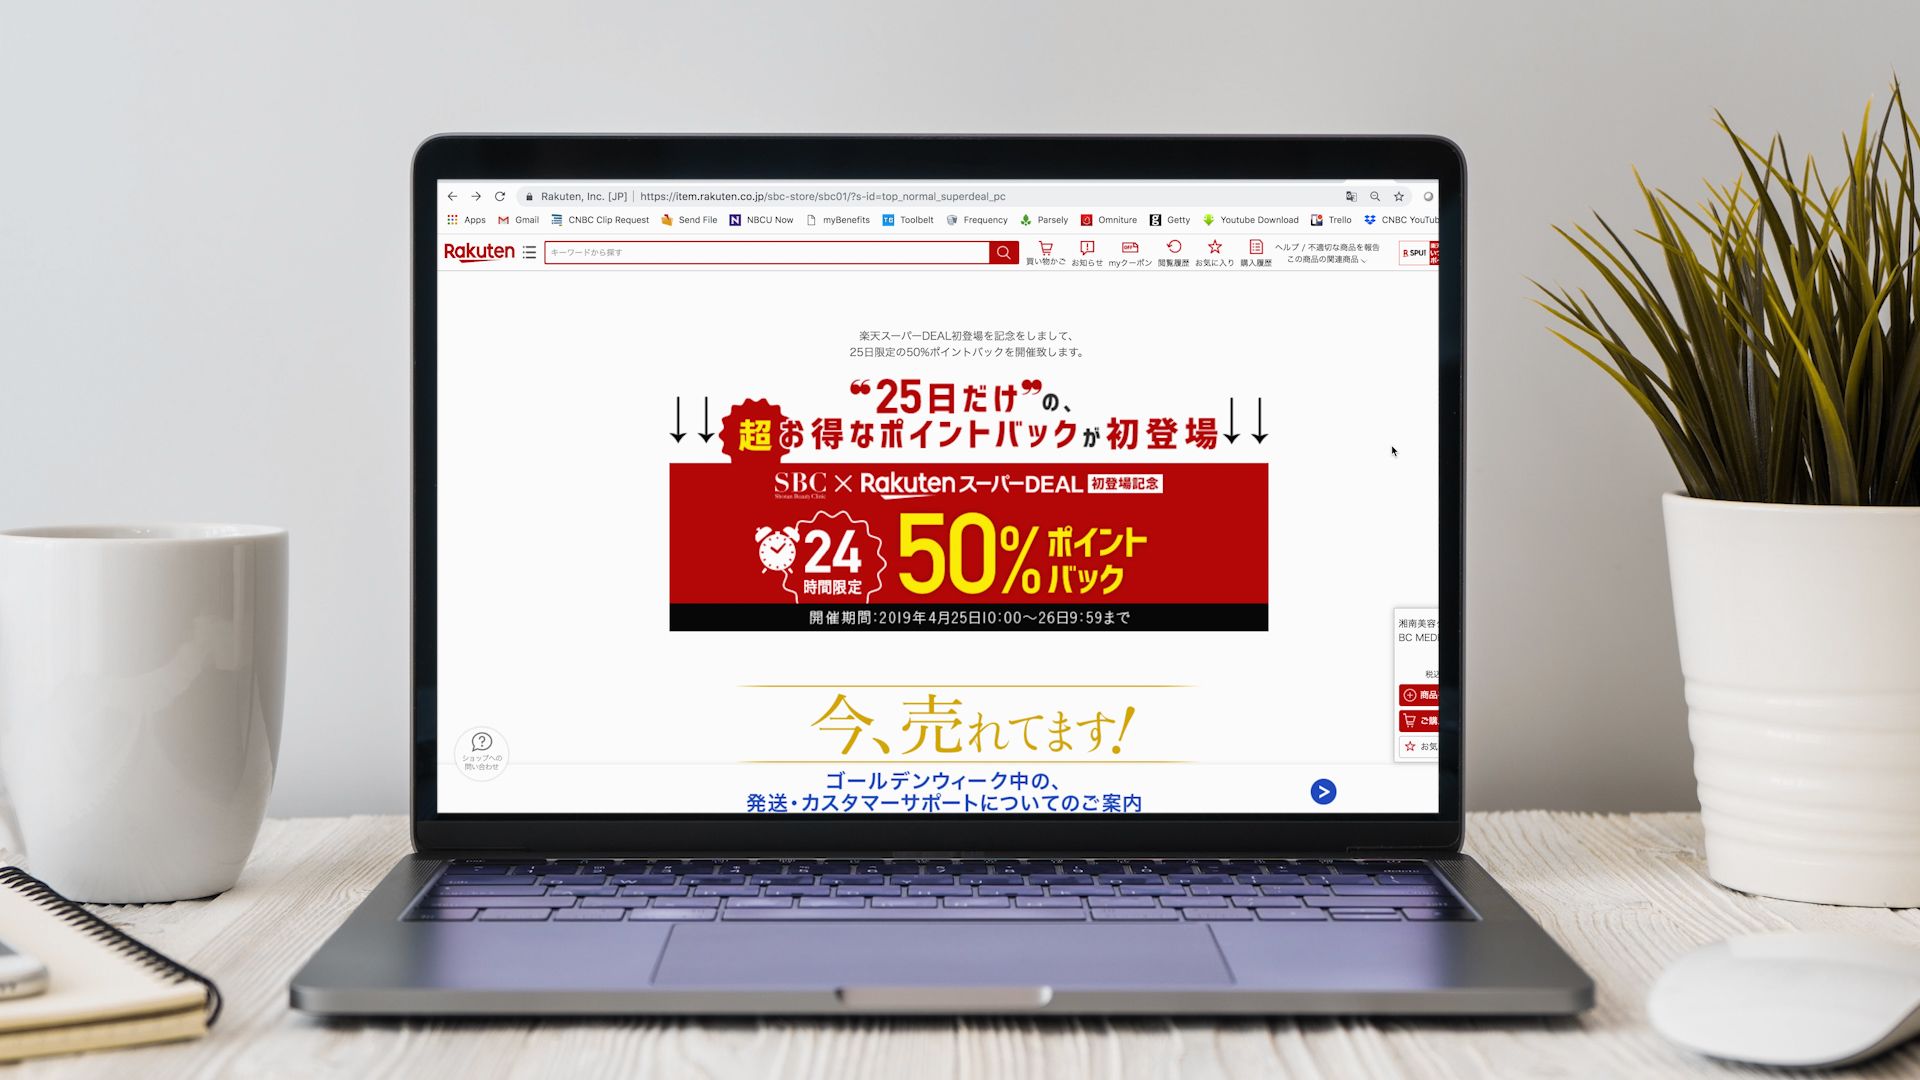 Amazon battles Rakuten for e-commerce market share in Japan